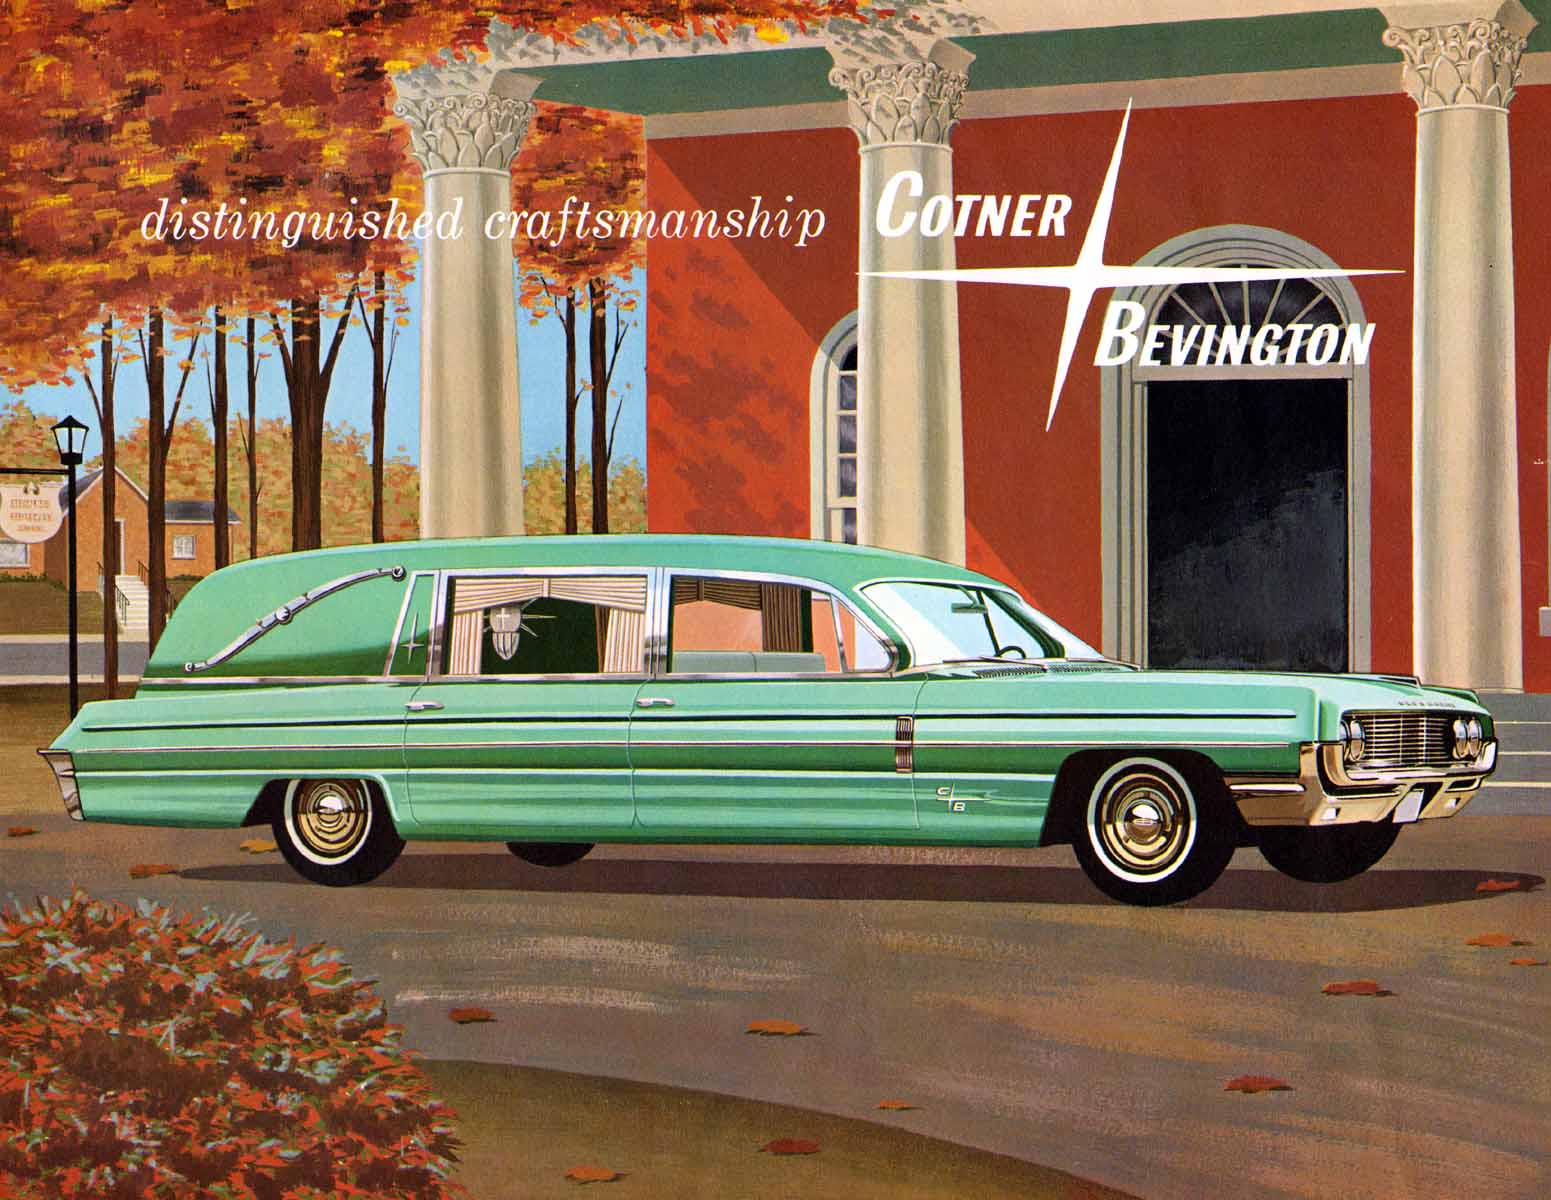 1962 Oldsmobile Cotner-Bevington